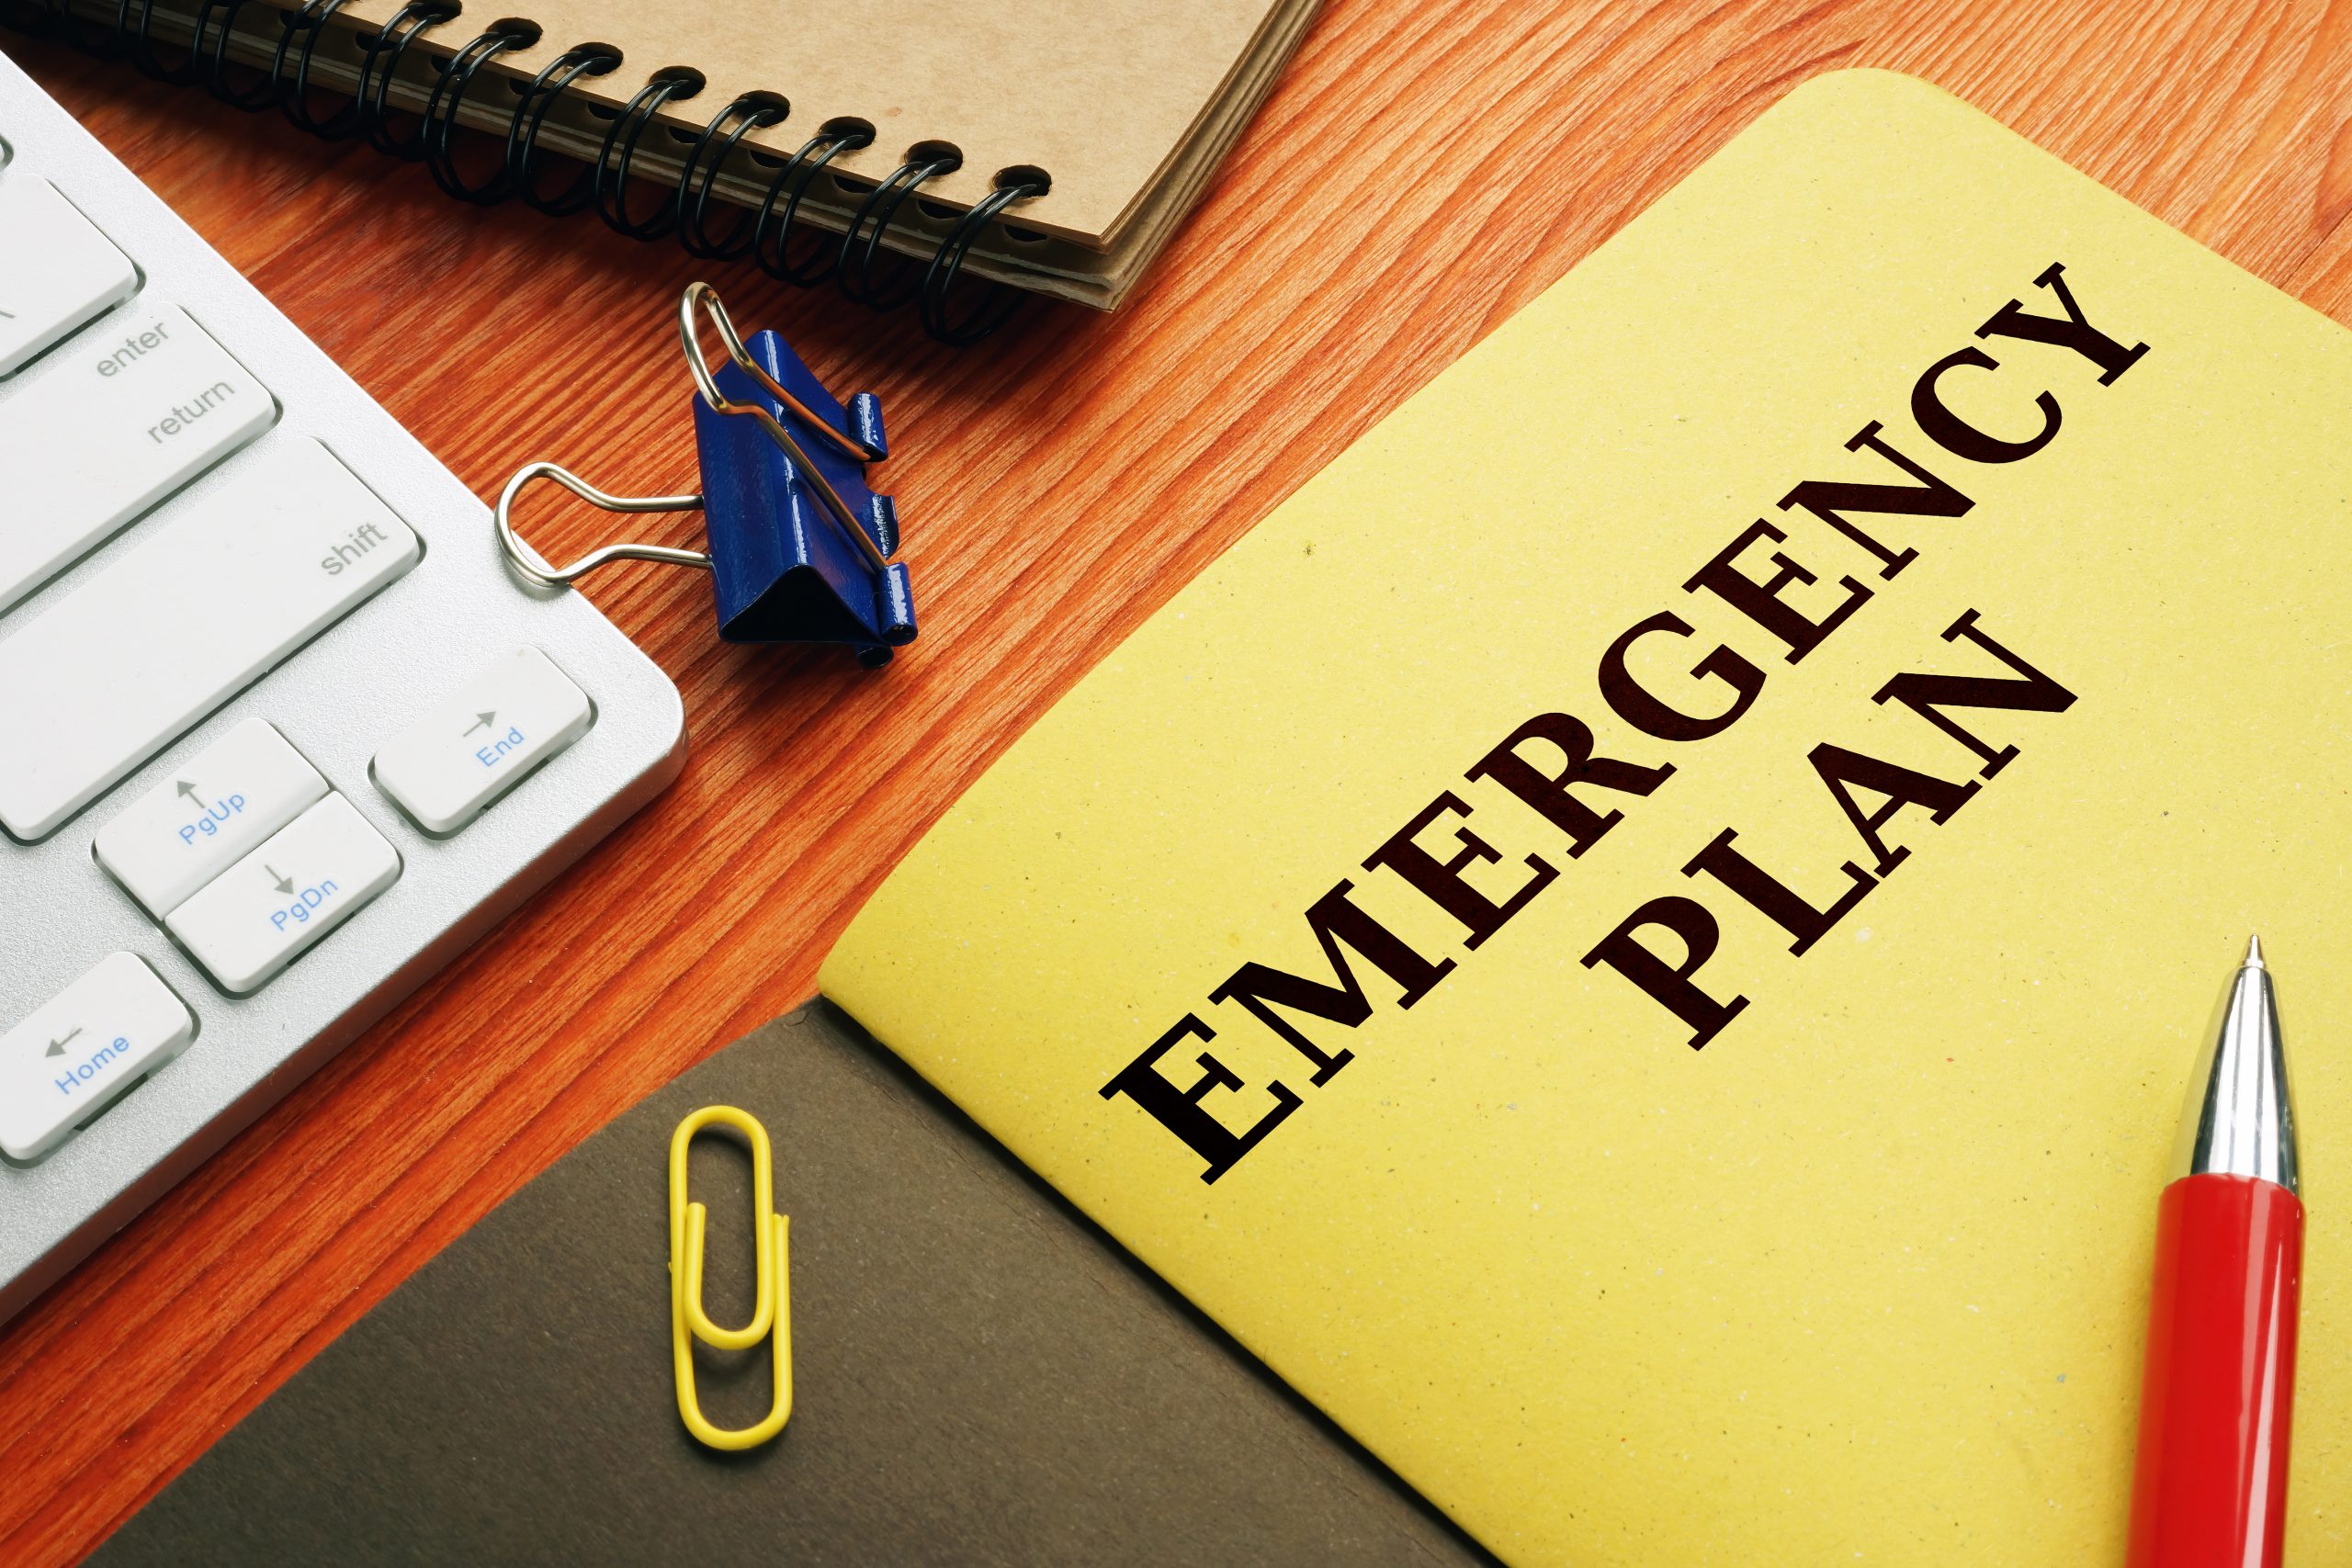 Emergency plan or Disaster Preparedness on the desk.